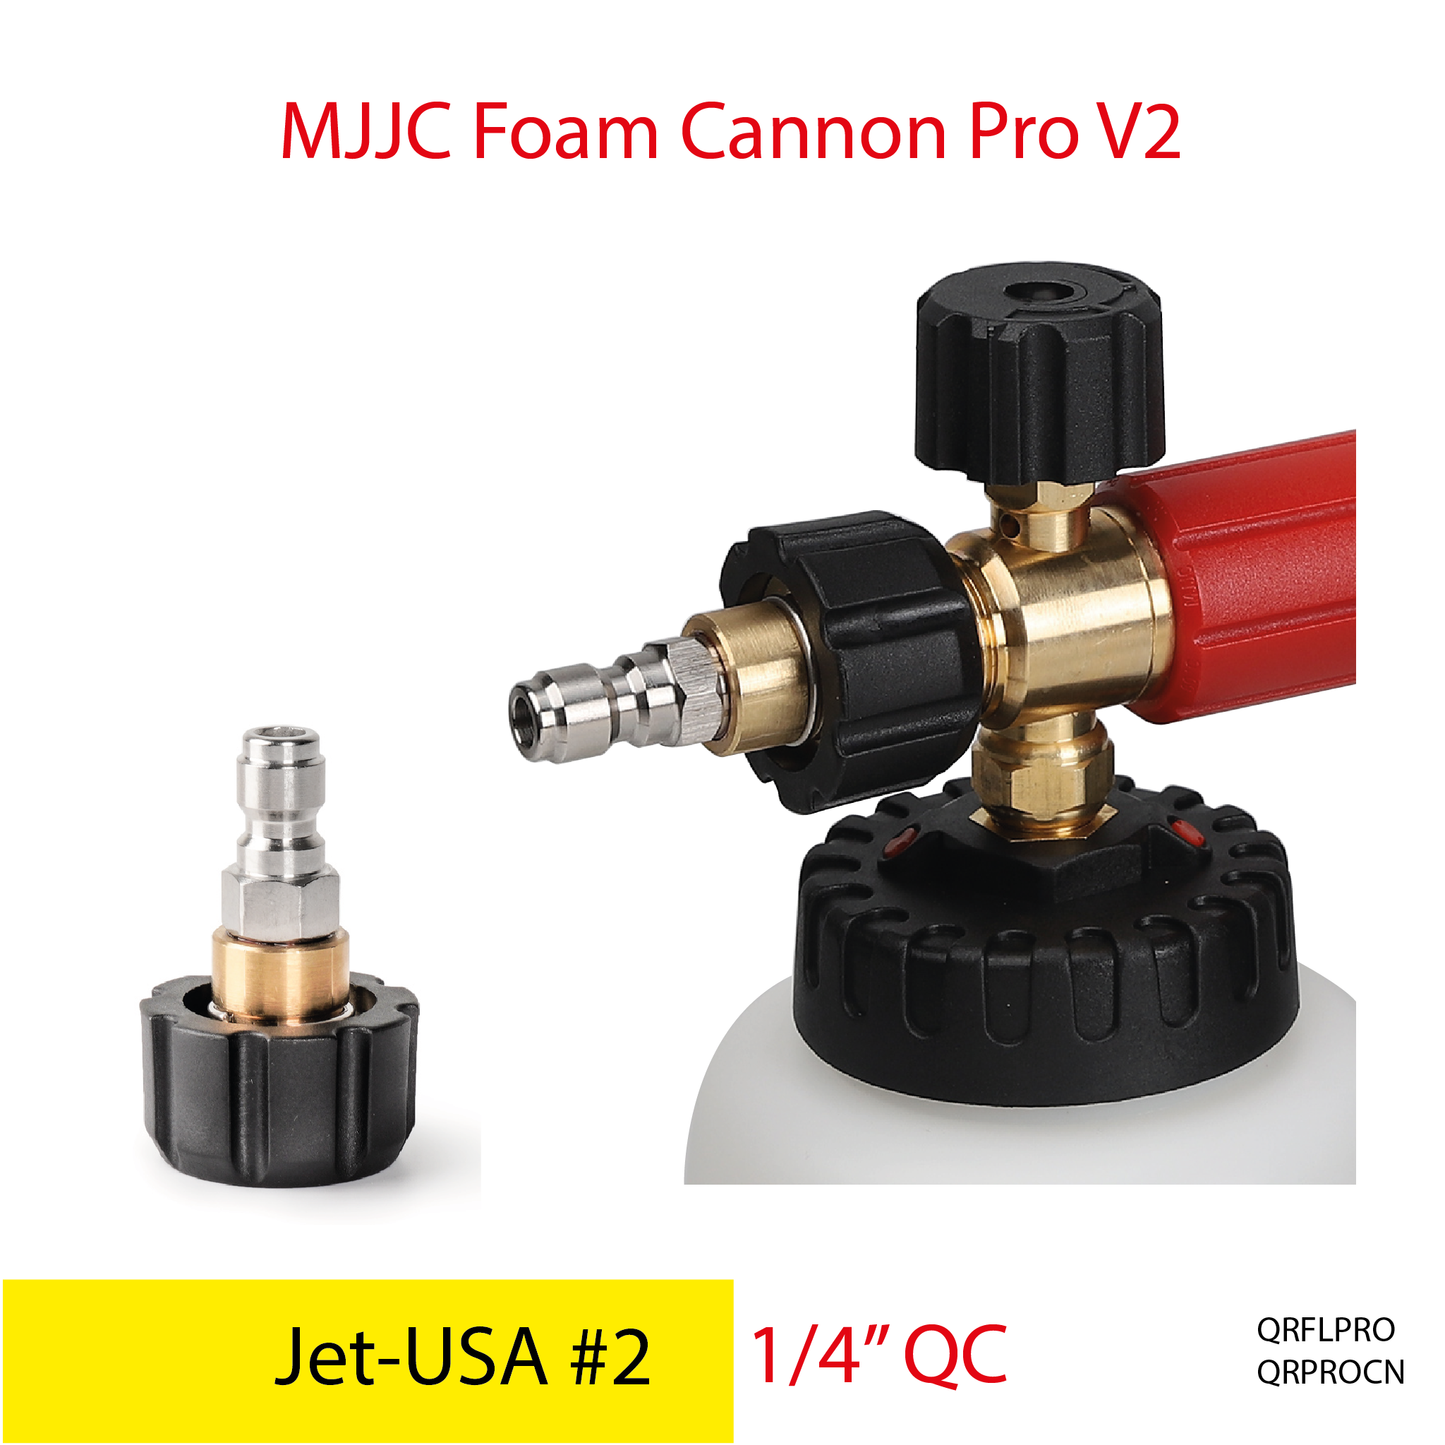 Jet-USA pressure washer - MJJC Foam Cannon Pro V2 (Pressure Washer Snow Foam Lance Gun)